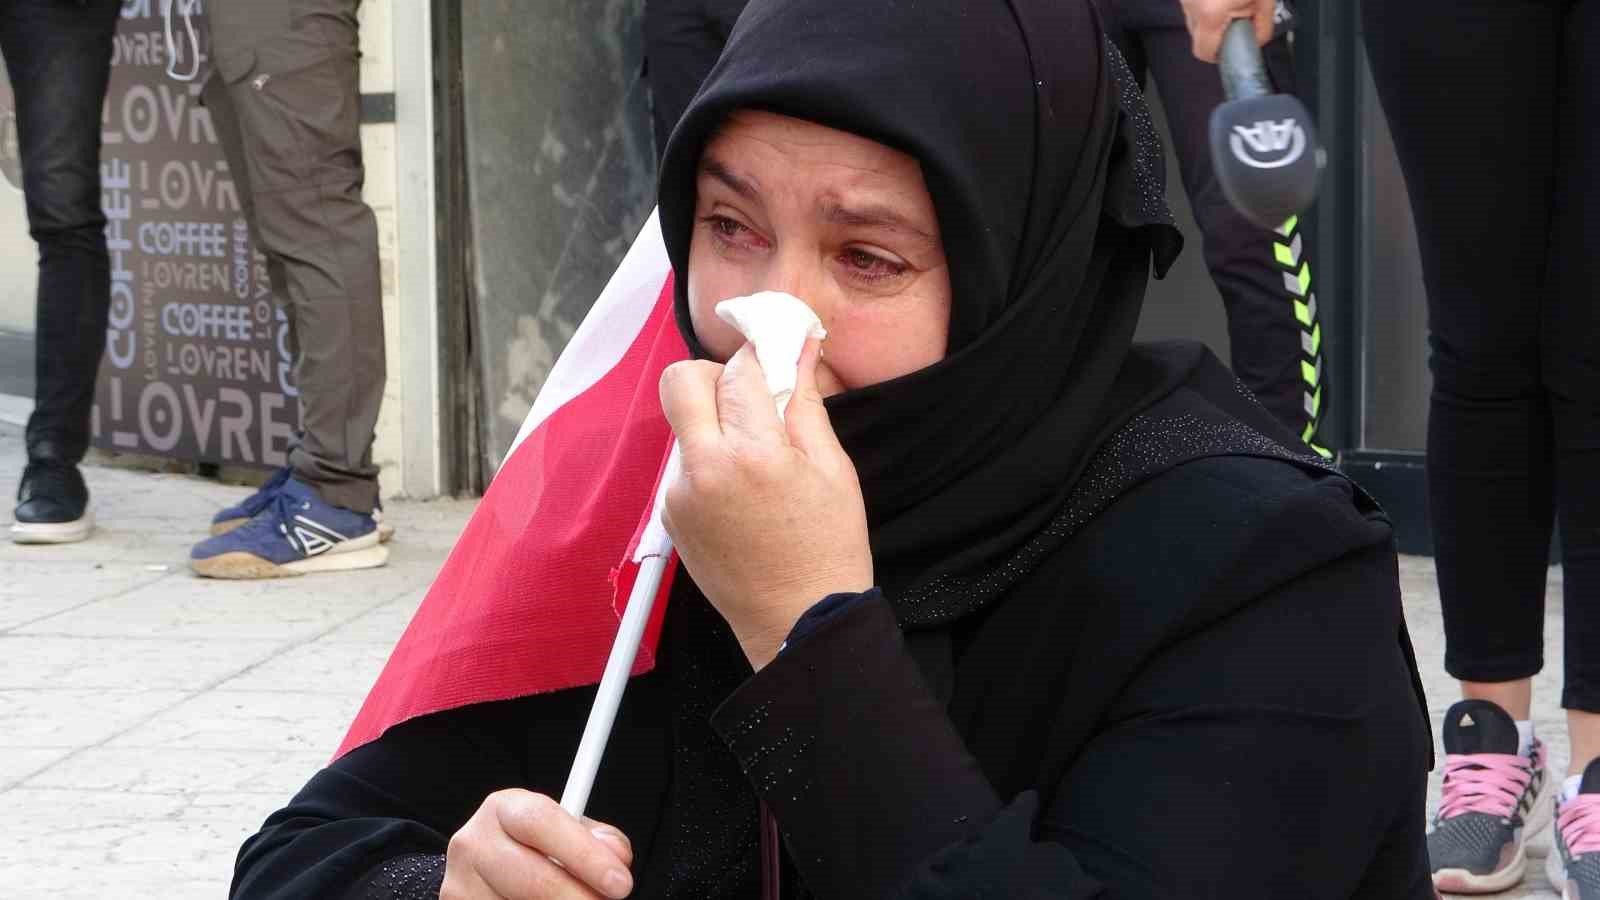 Evlat nöbetindeki anne Nazlı Sancar: “Kanımın son damlasına kadar HDP’nin kapısından ayrılmayacağım”